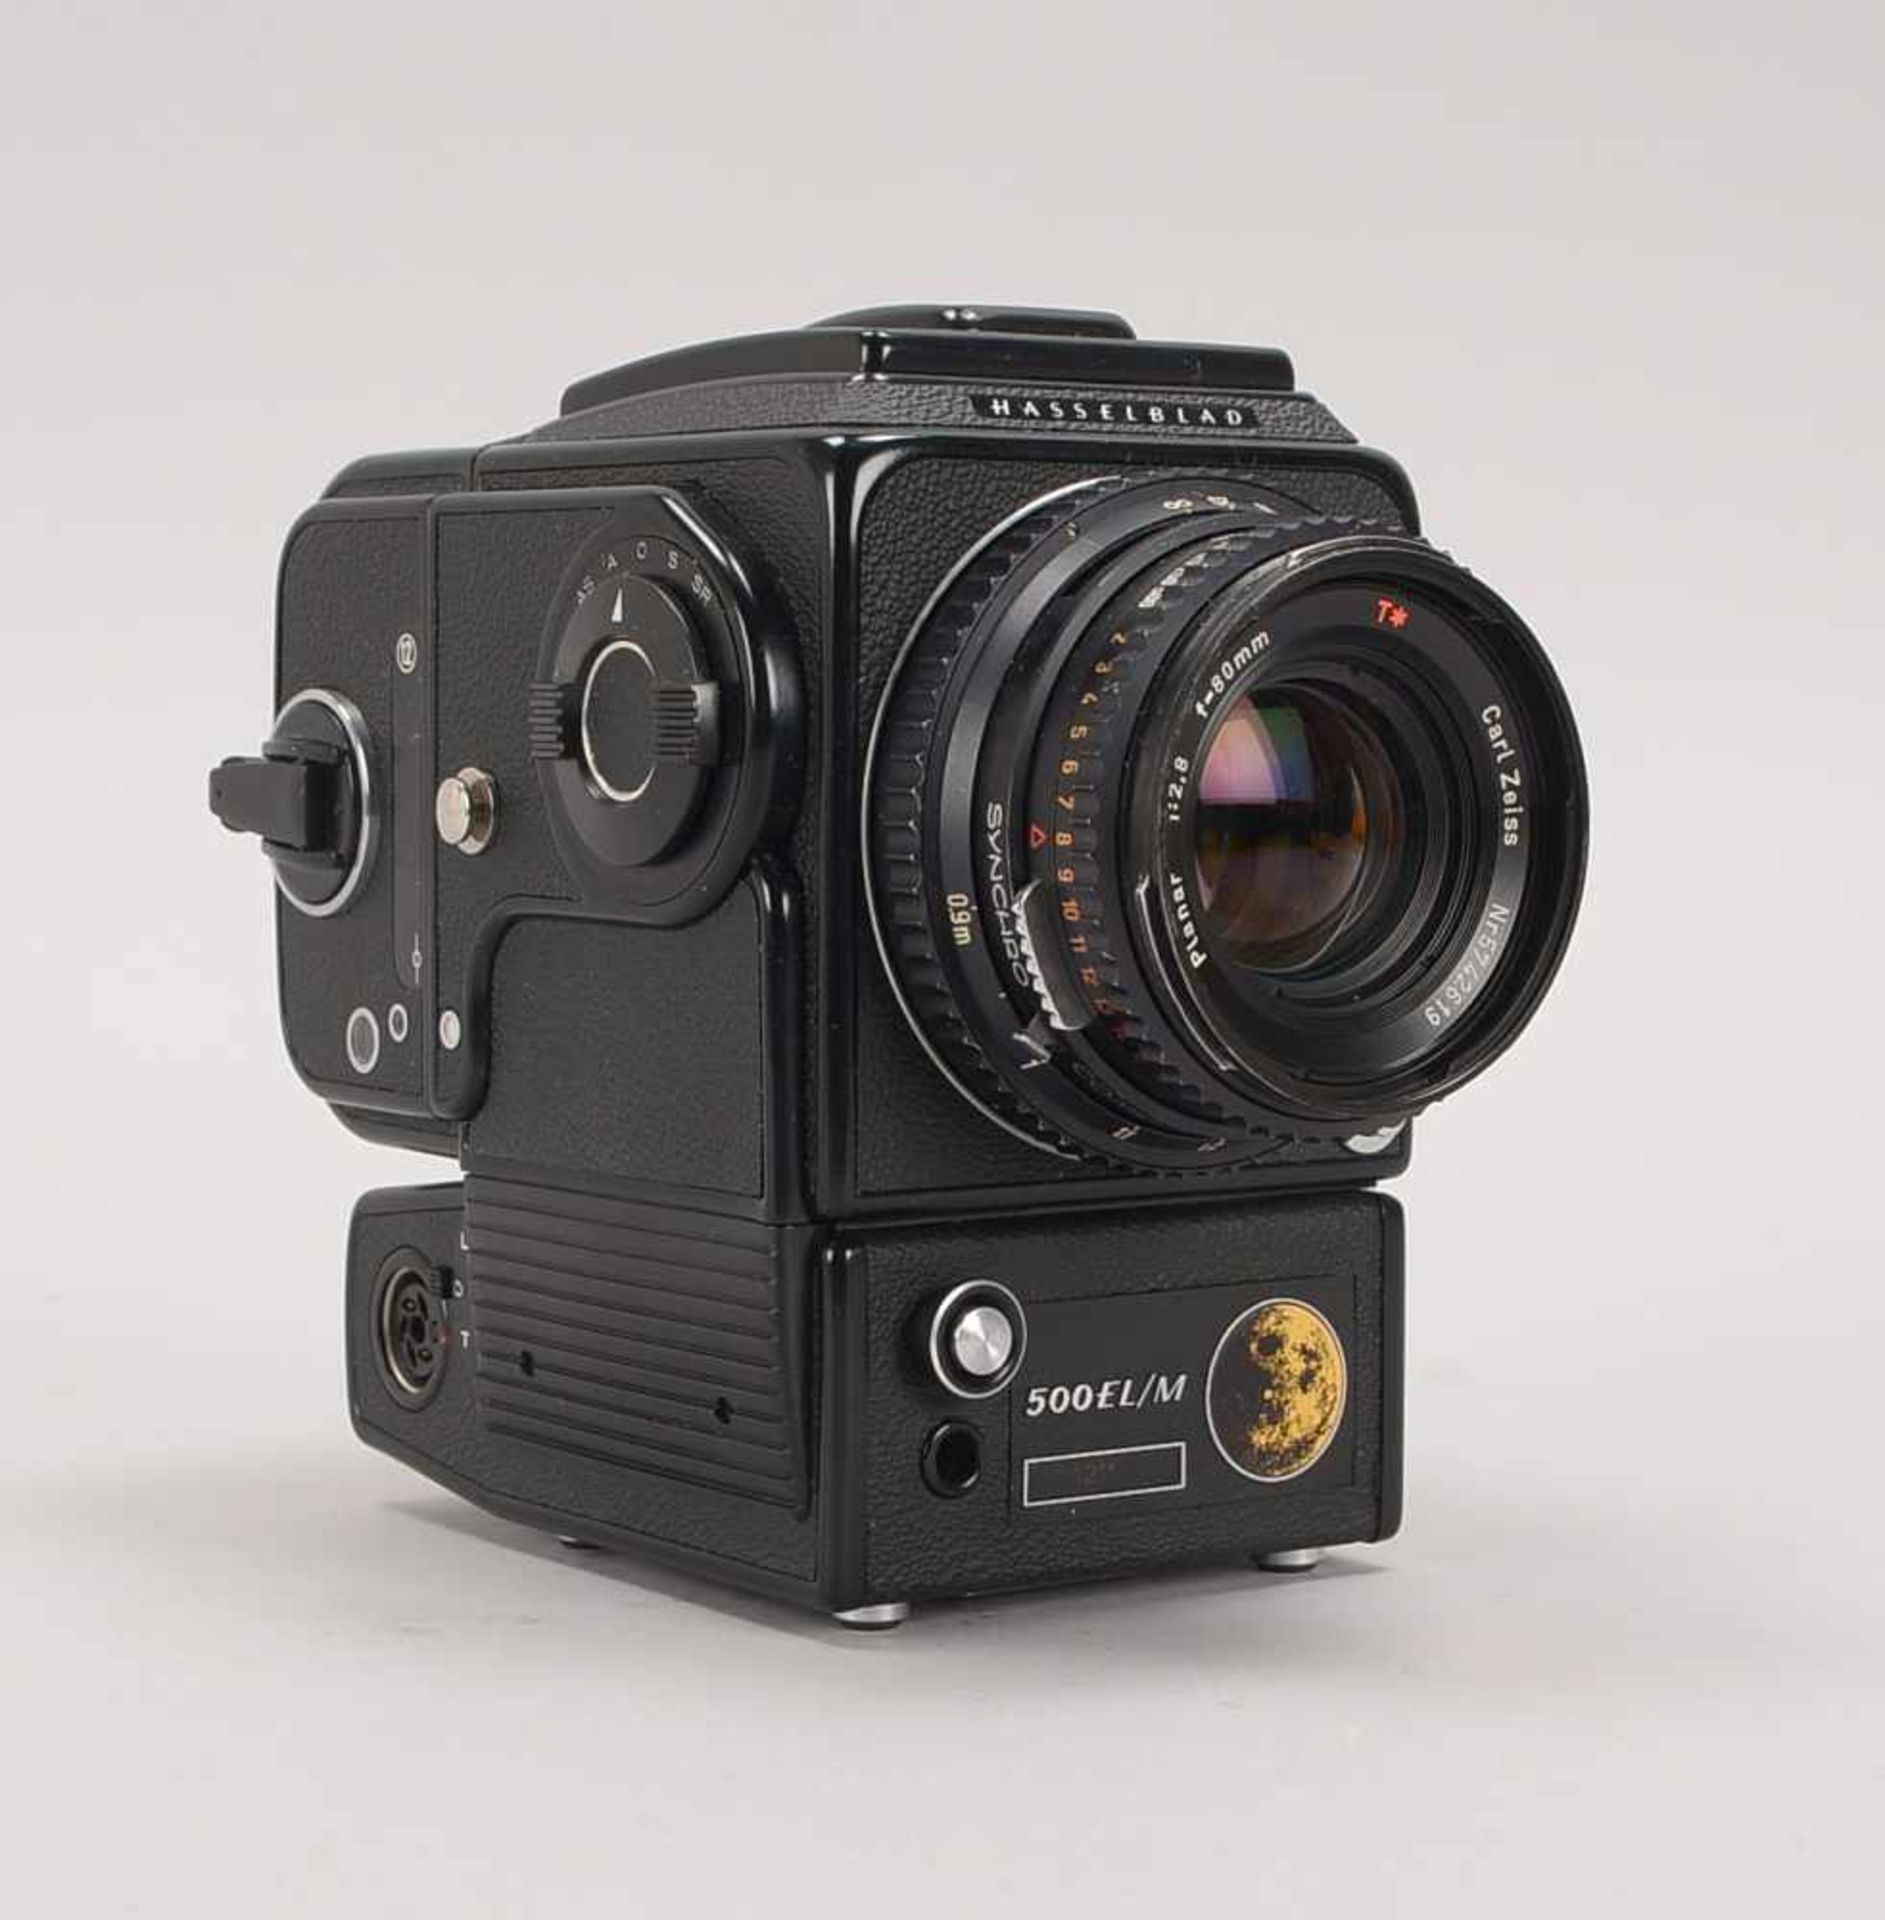 Kamera, Hasselblad/Schweden, '500 EL/M', mit Carl Zeiss-Objektiv 'Planar 1:2,8, f=80mm'; 2x - Bild 2 aus 2